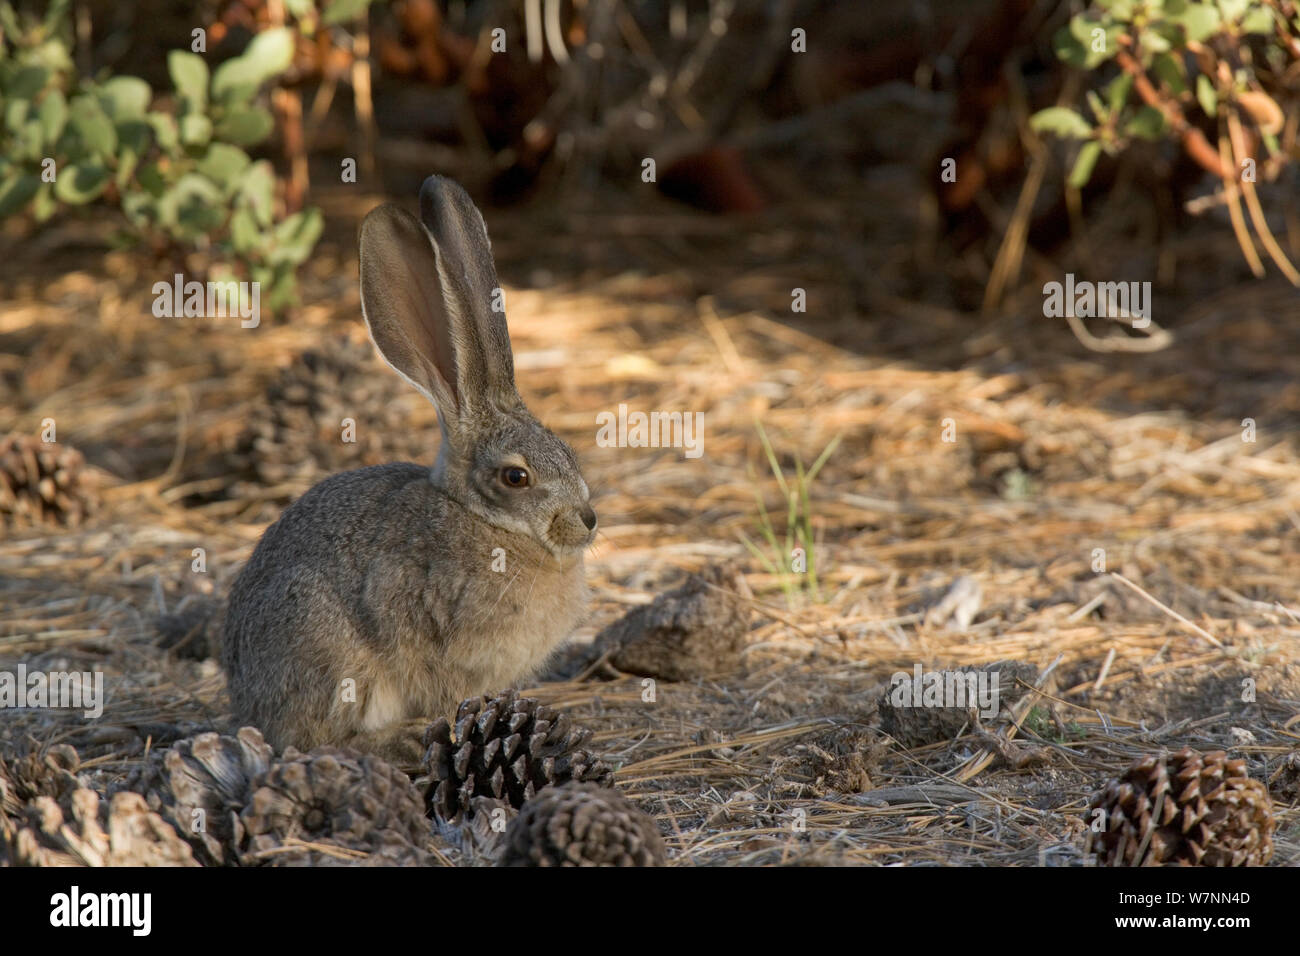 Cepillo de conejo (Sylvilagus bachmani), San Pedro Martir, Parque Nacional de la península de Baja California, México, mayo. Foto de stock